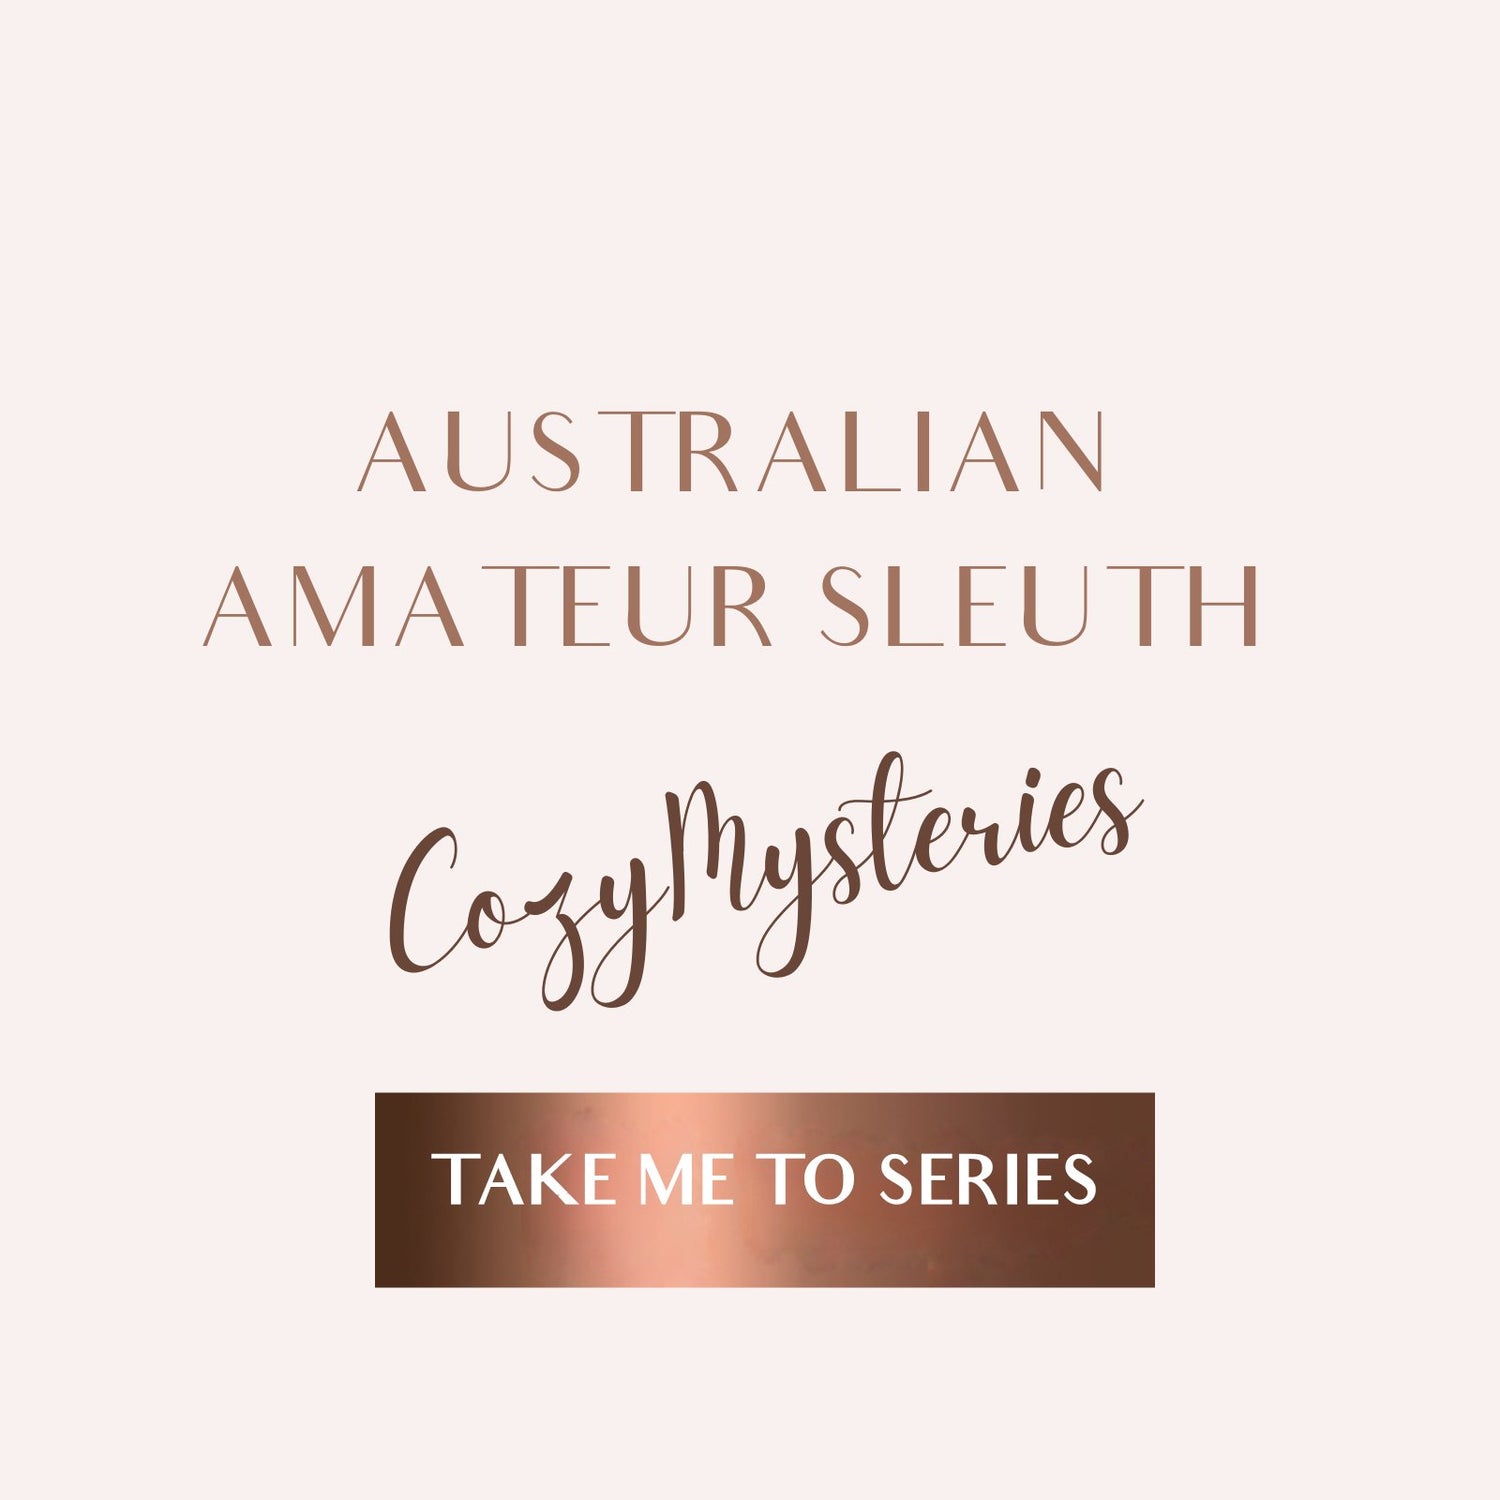 Australian Amateur Sleuth EBOOKS